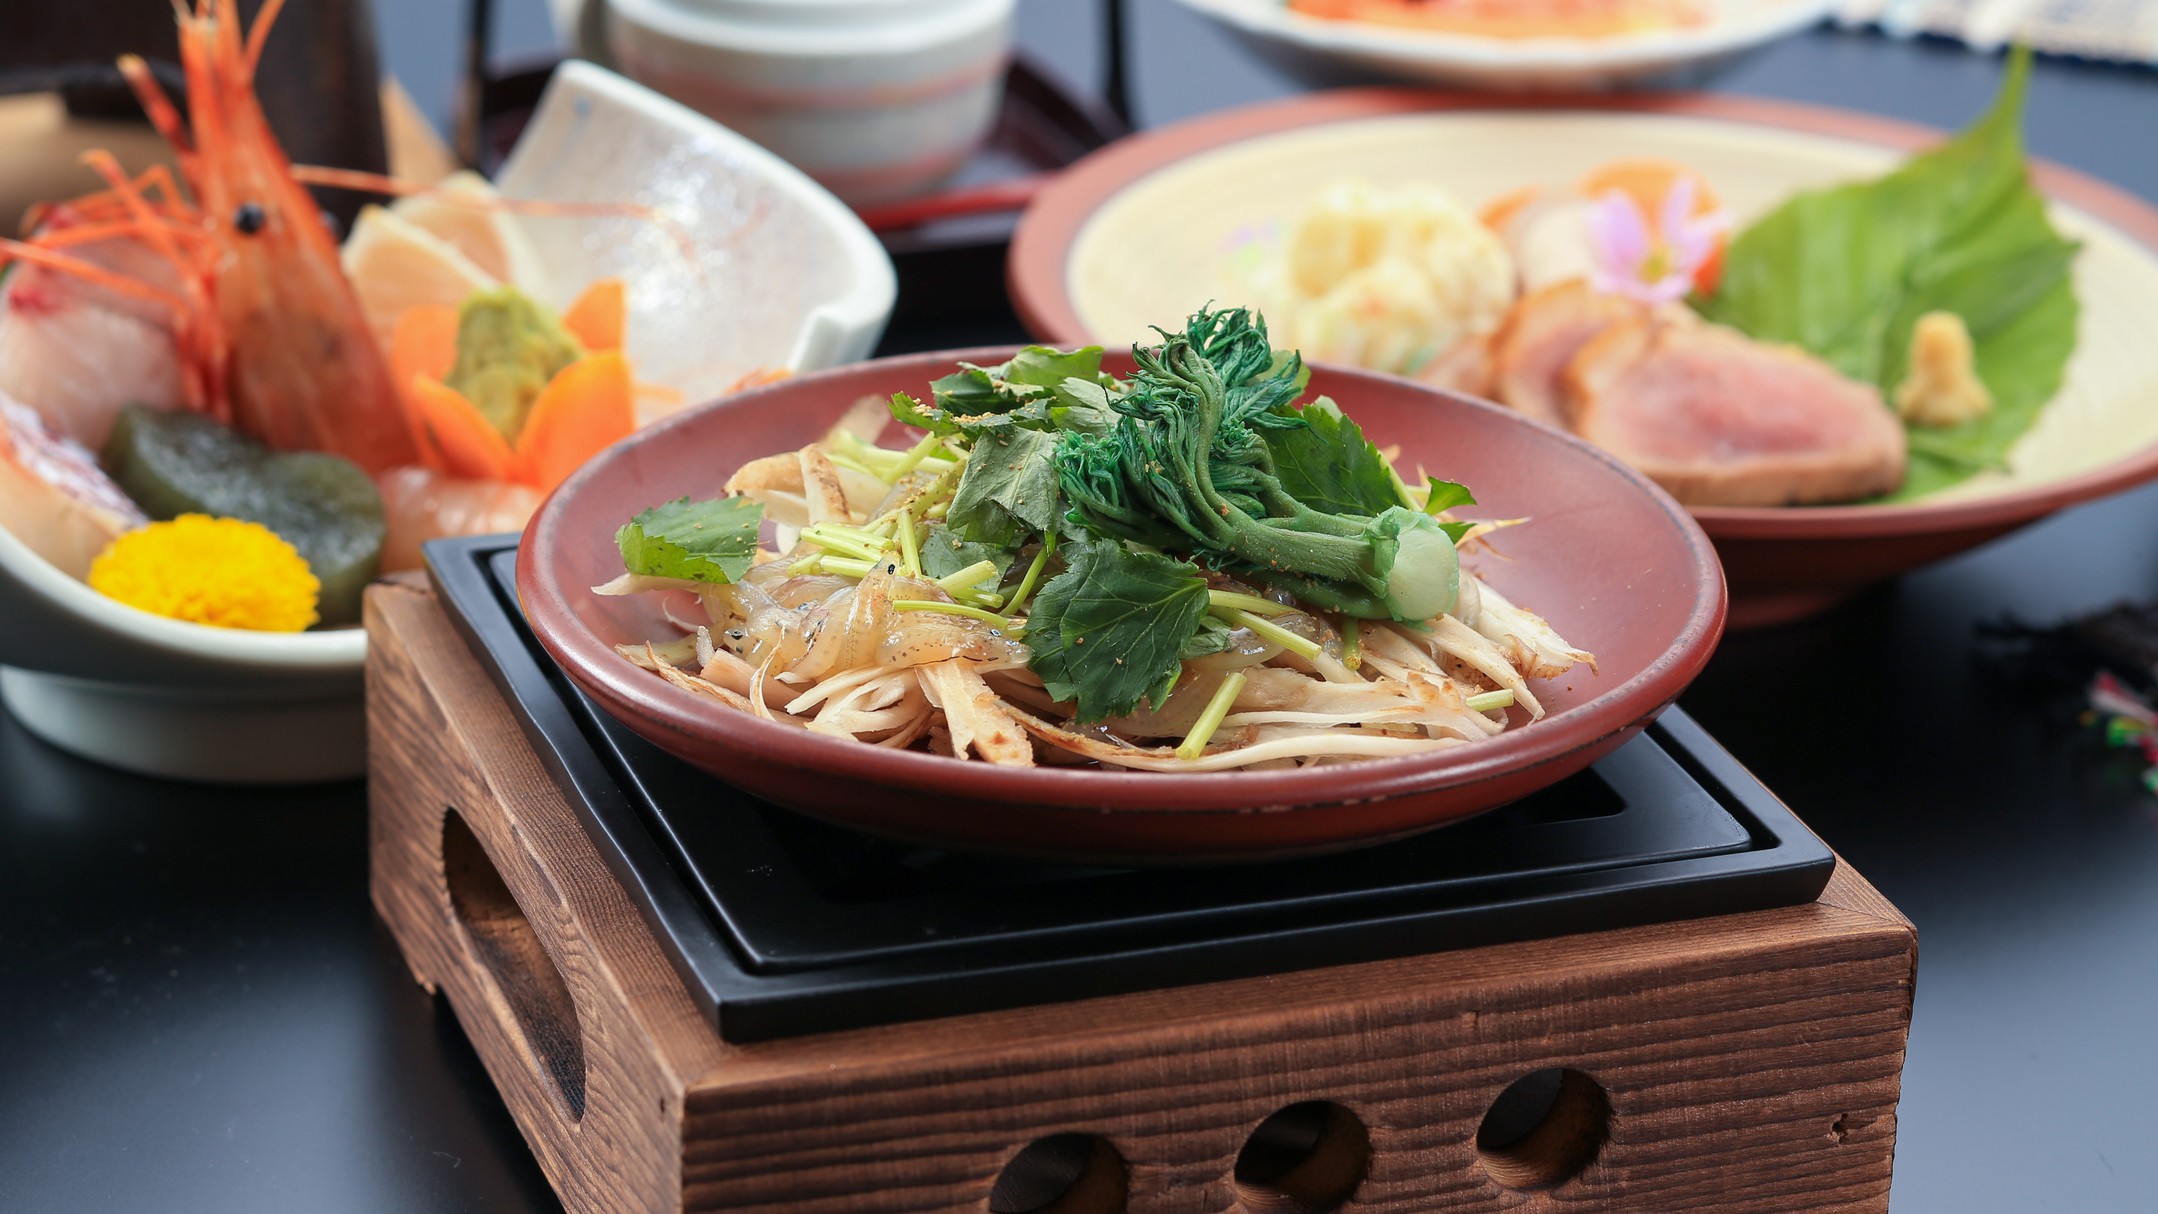 【料理例】春の一品白魚・山菜の柳川風鍋